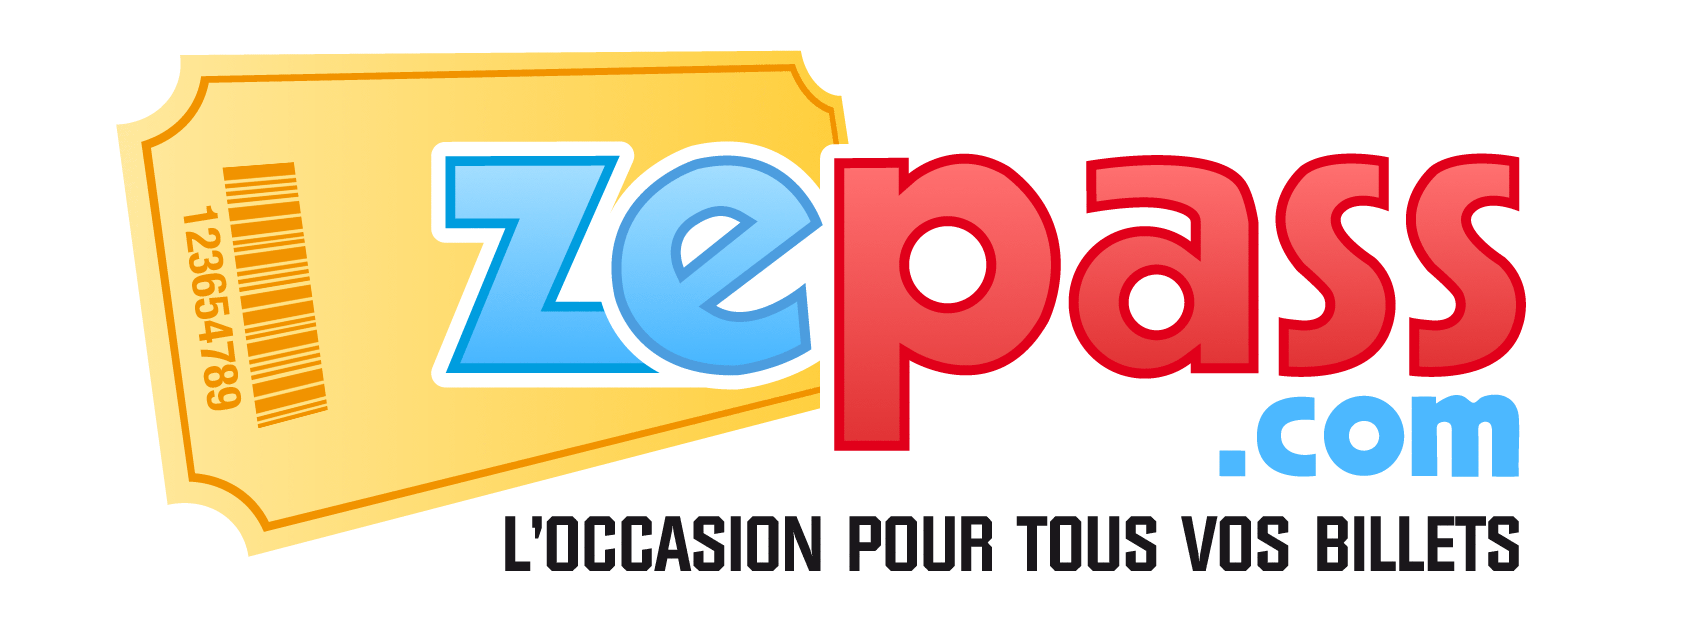 Zepass.com